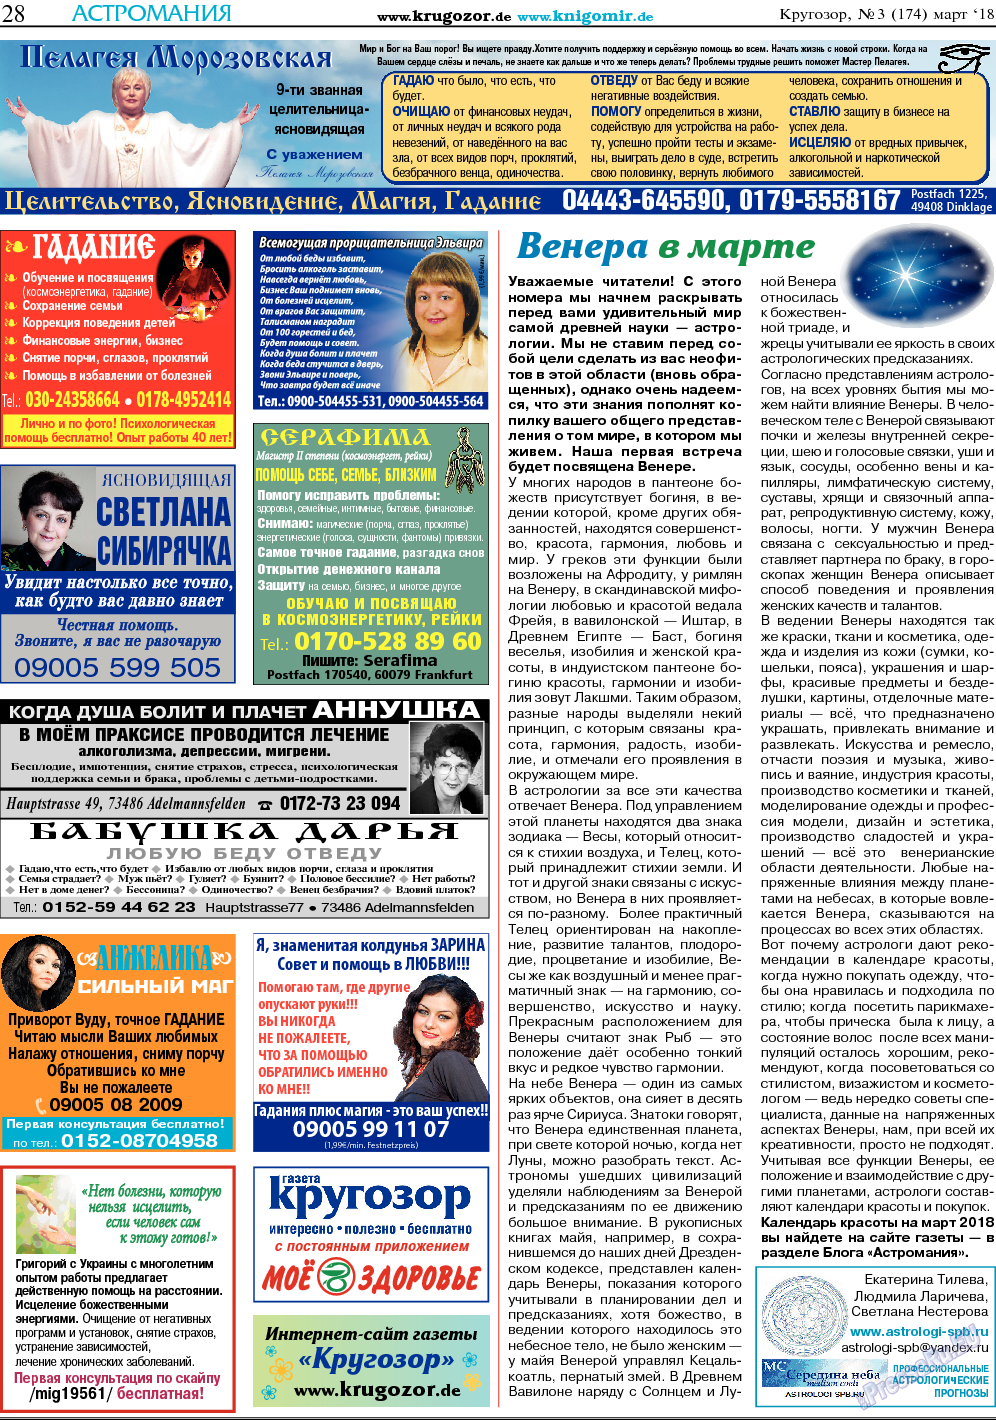 Кругозор, газета. 2018 №3 стр.28